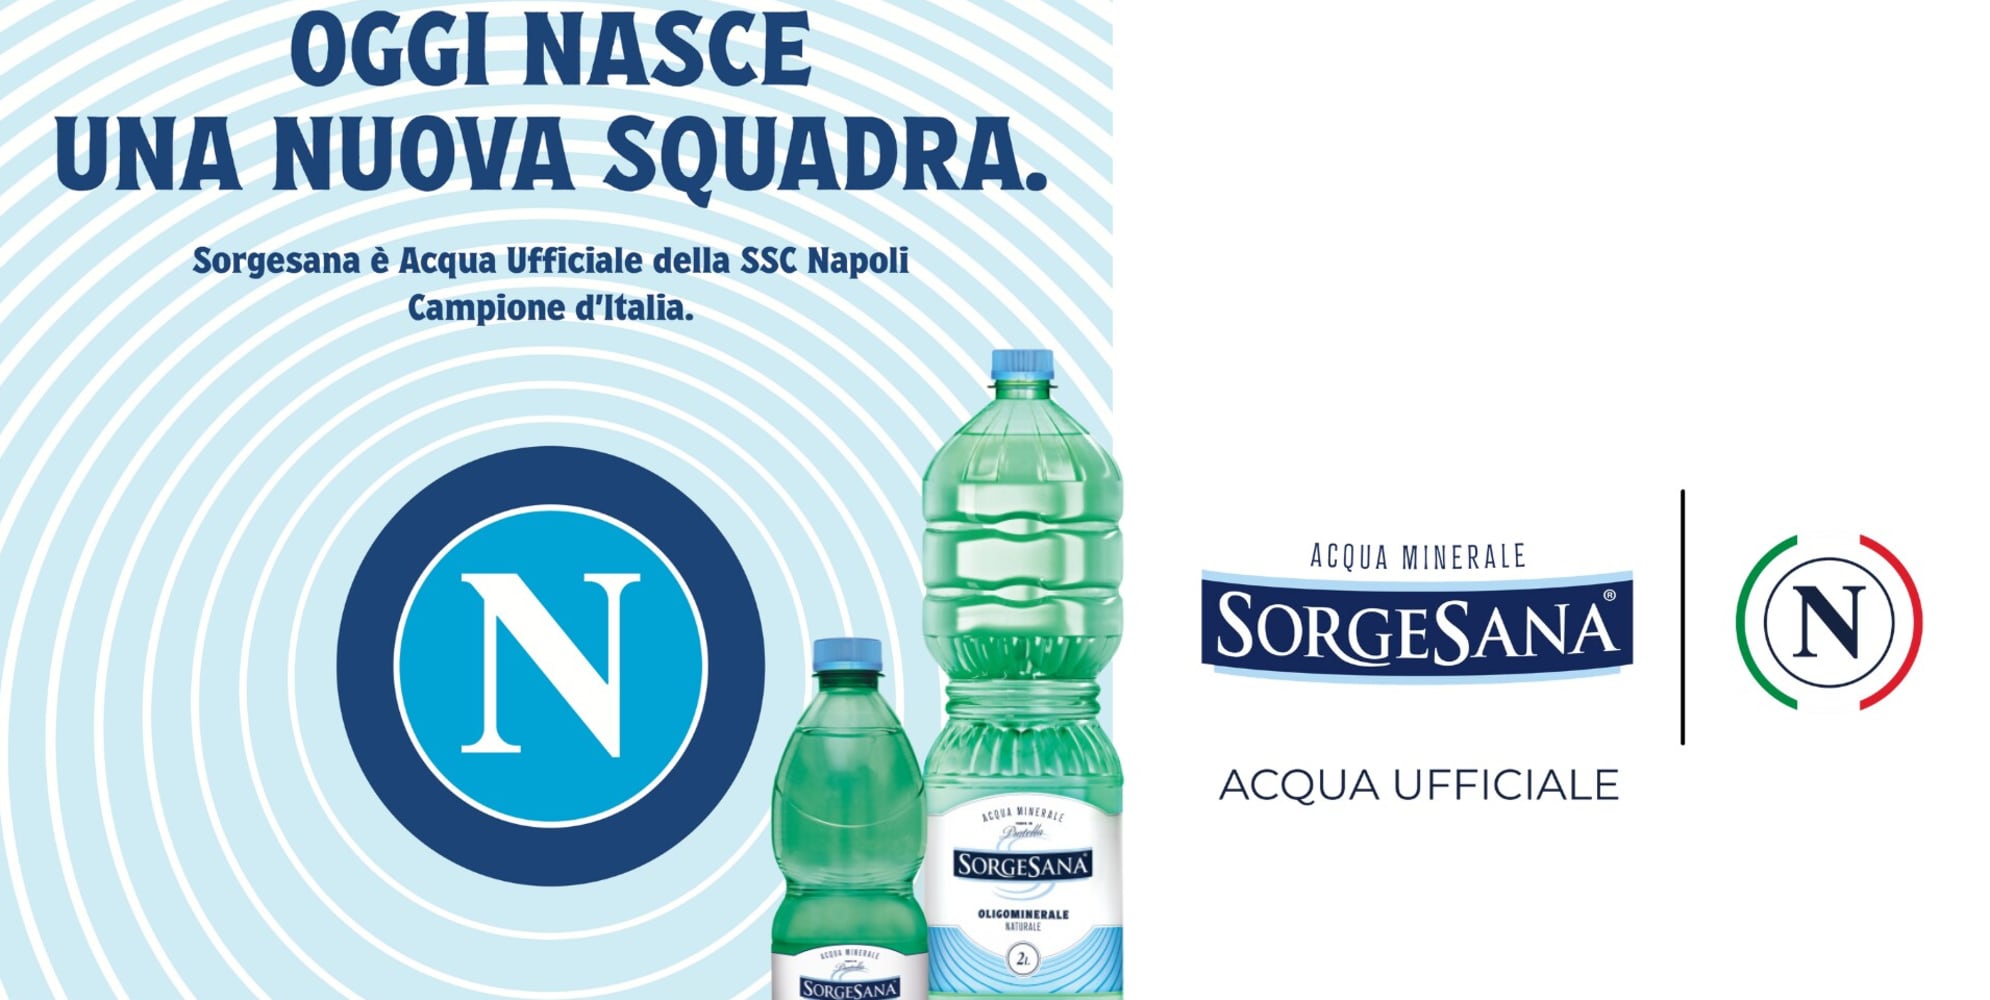 Tuttosport – Sorgesana è la nuova Acqua ufficiale del Napoli